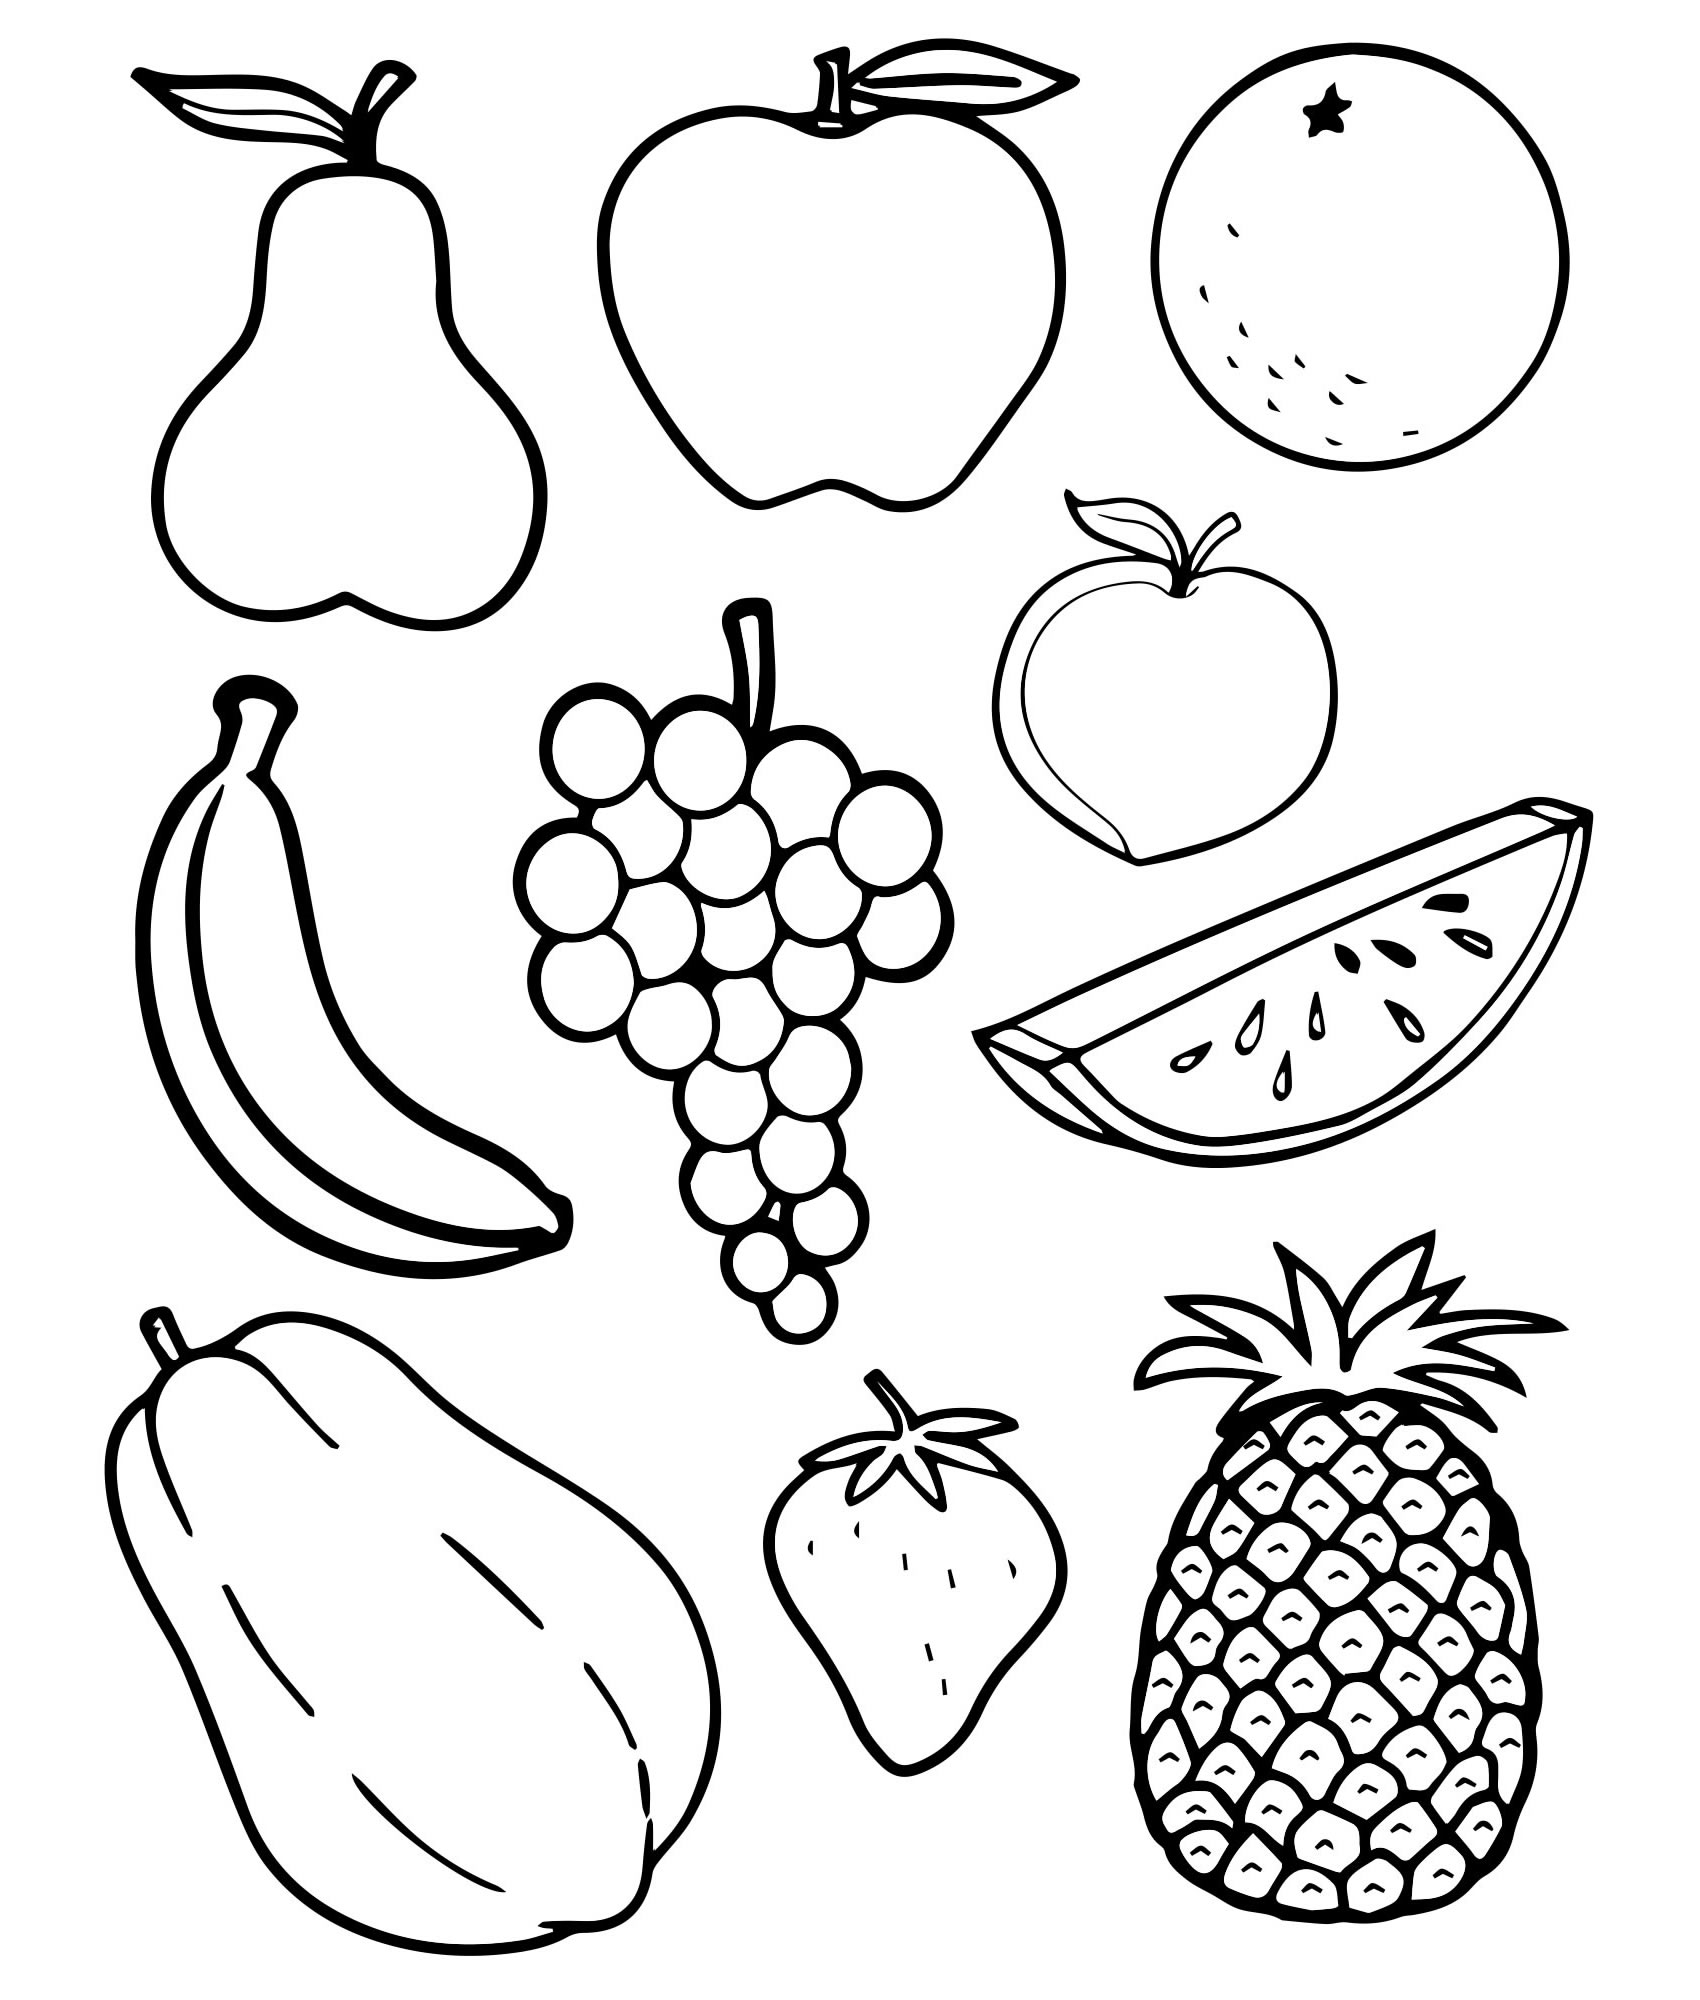 Картинки овощей и фруктов для детей